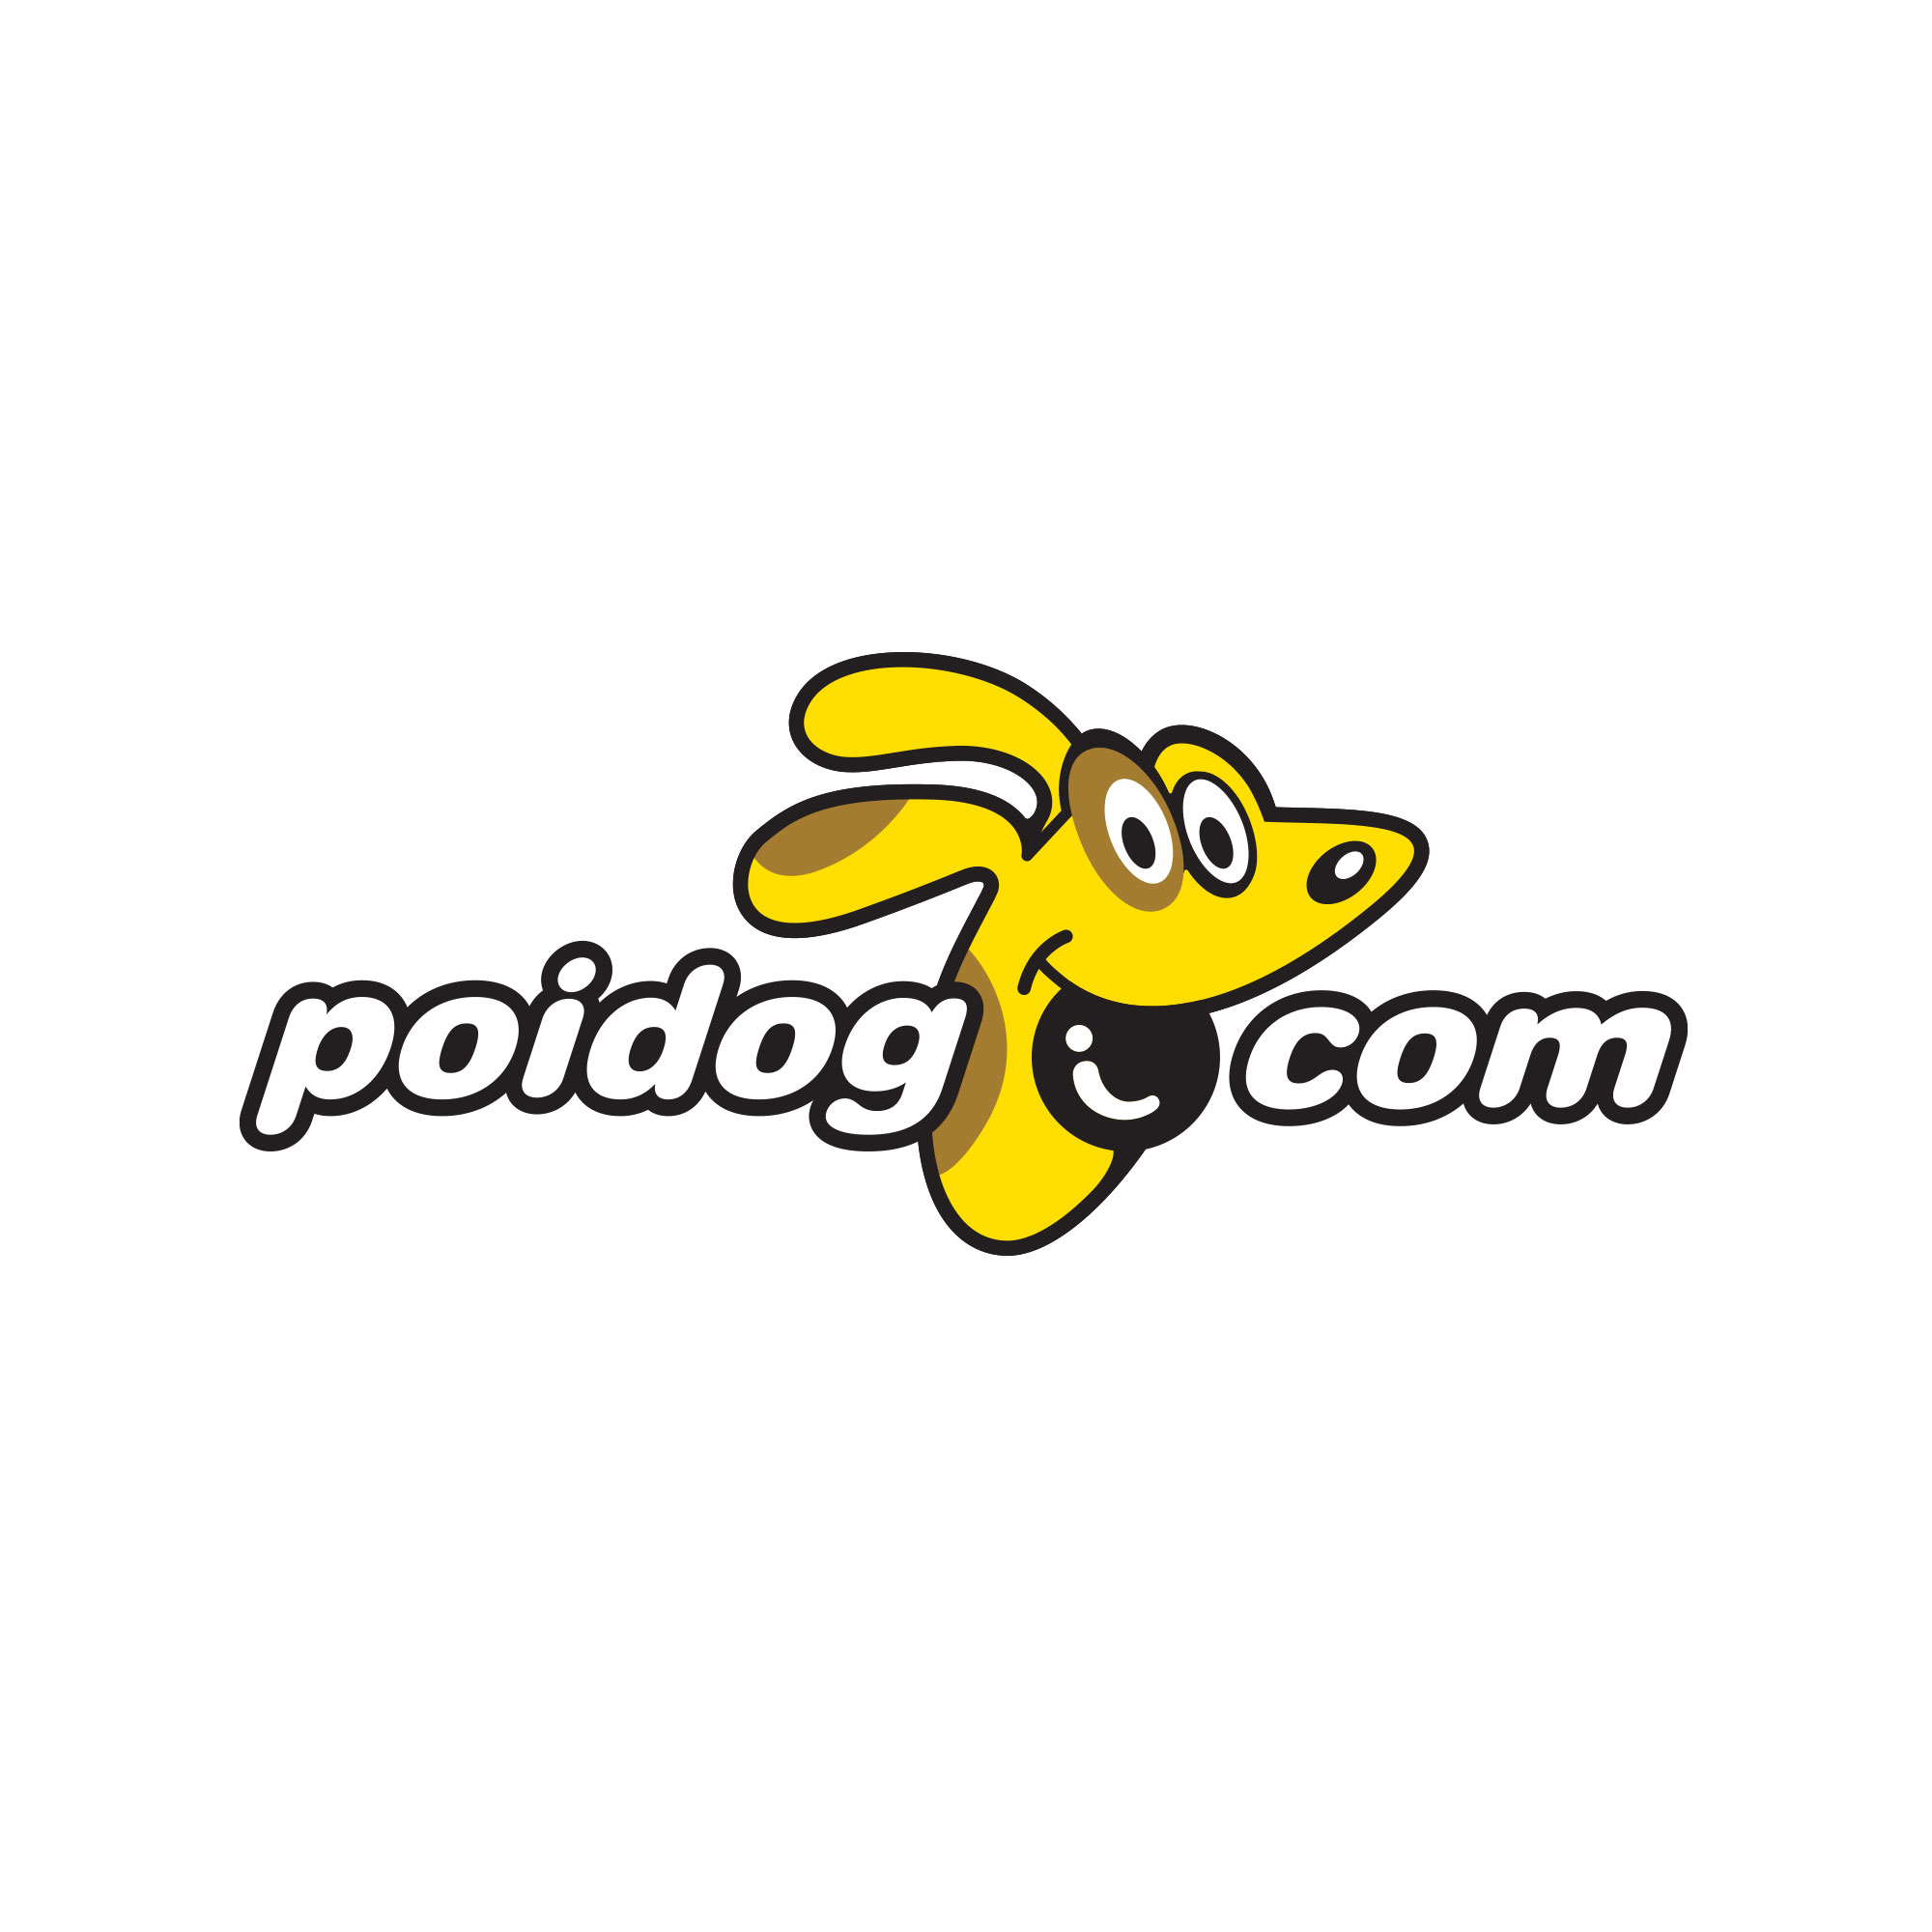 Poidog.com Website Logo Design